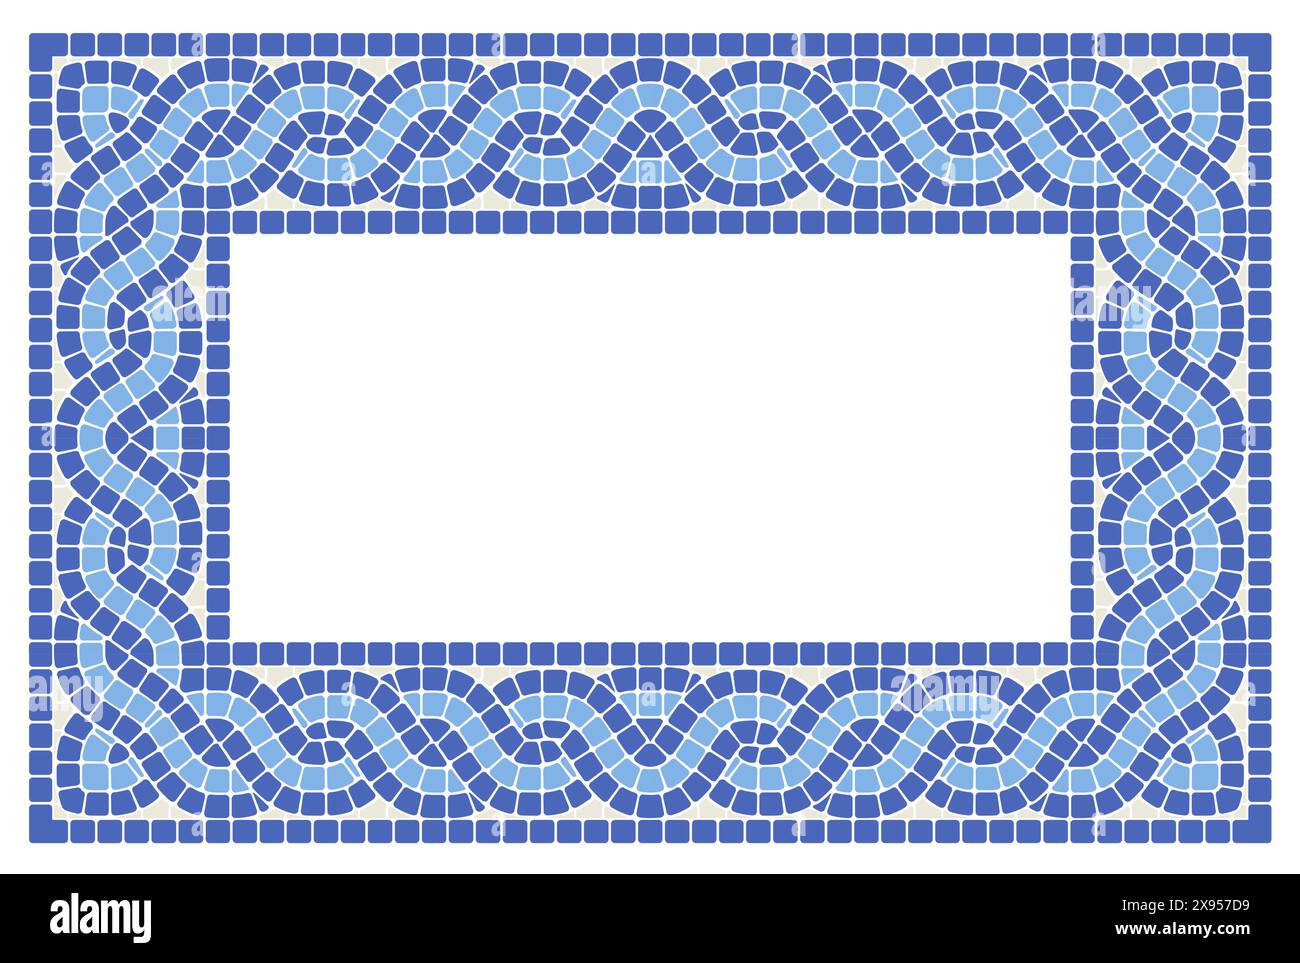 Cadre carré avec tresses de mosaïque entrelacées, motif grec avec bordure de carrelage entrelacée, queues de cochon en mosaïque, vecteur Illustration de Vecteur